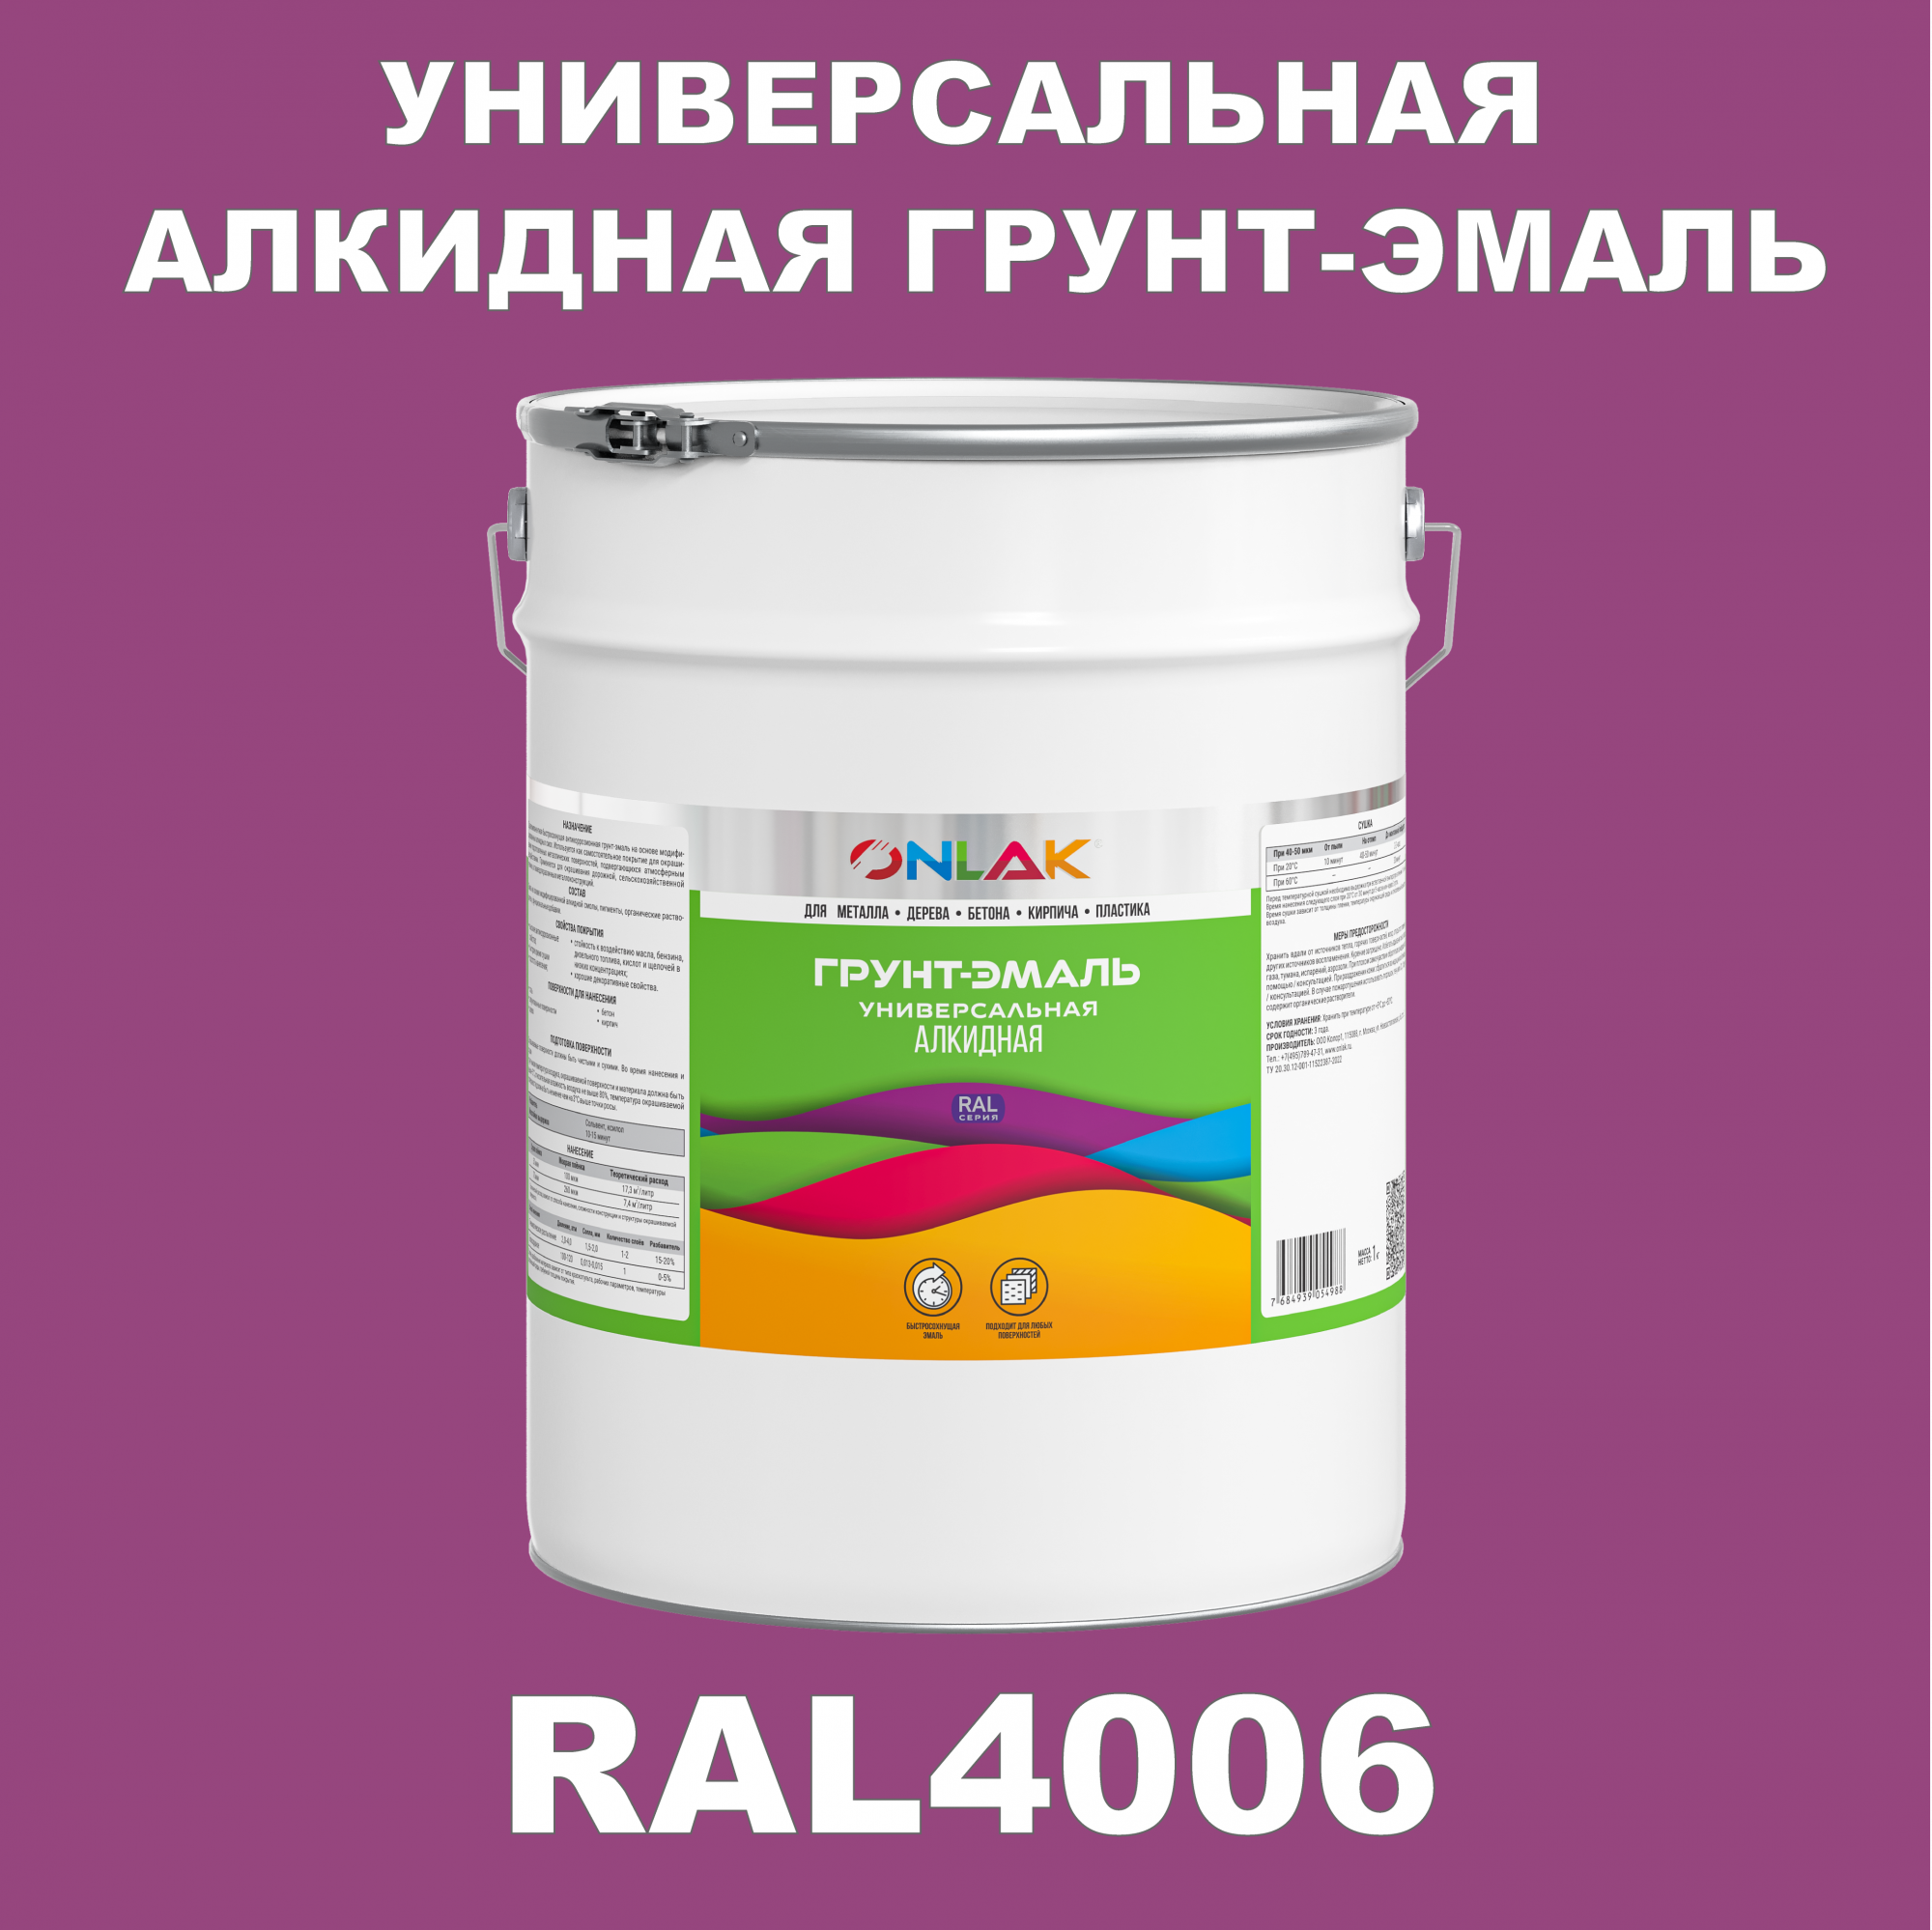 Грунт-эмаль ONLAK 1К RAL4006 антикоррозионная алкидная по металлу по ржавчине 20 кг антикоррозионная грунт эмаль onlak ral 4007 фиолетовый 572 мл